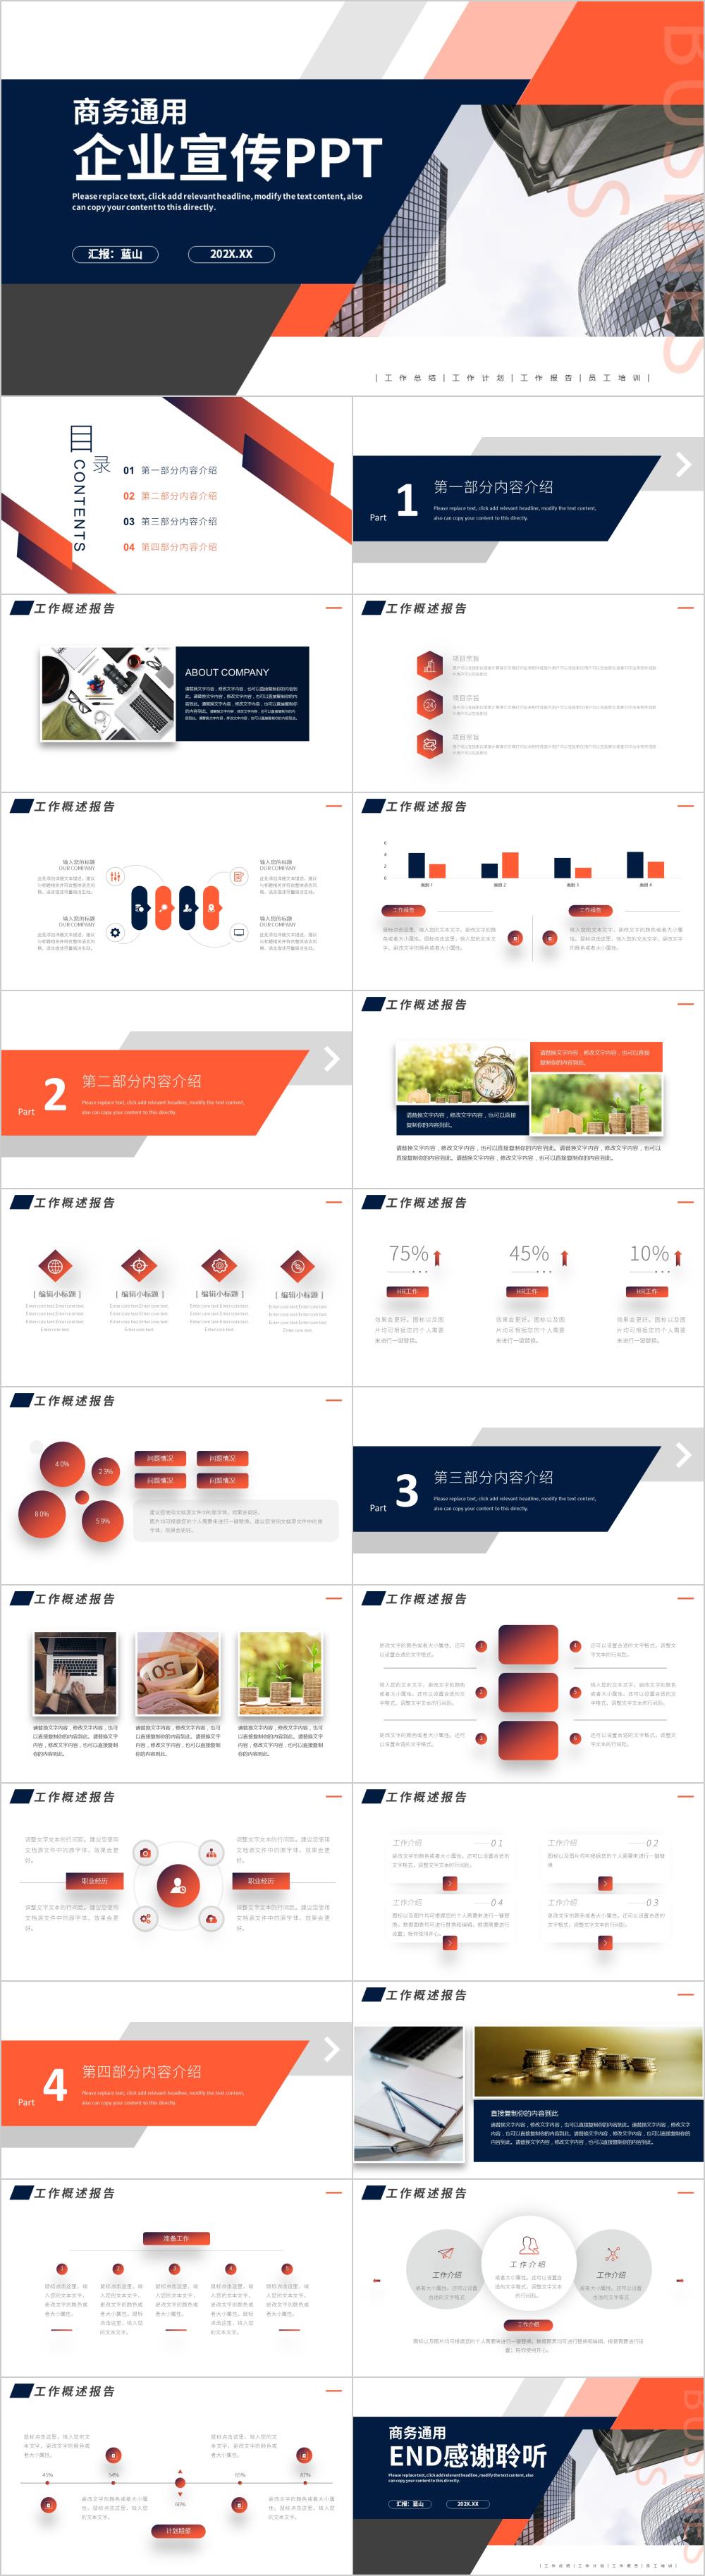 蓝橙公司简介企业宣传介绍PPT模板